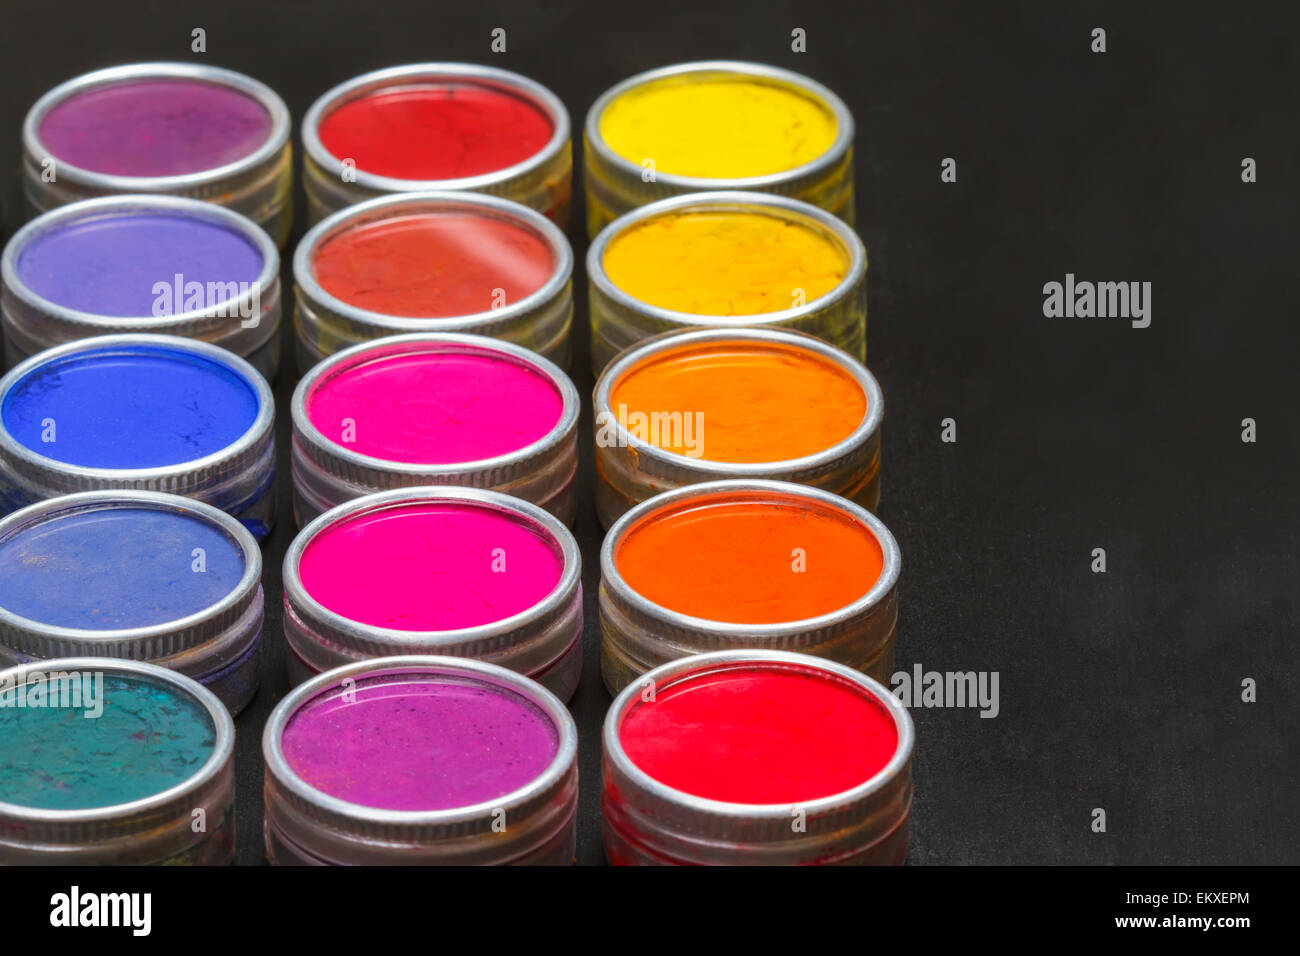 Paint Tin Display Stock Photos & Paint Tin Display Stock Images - Alamy